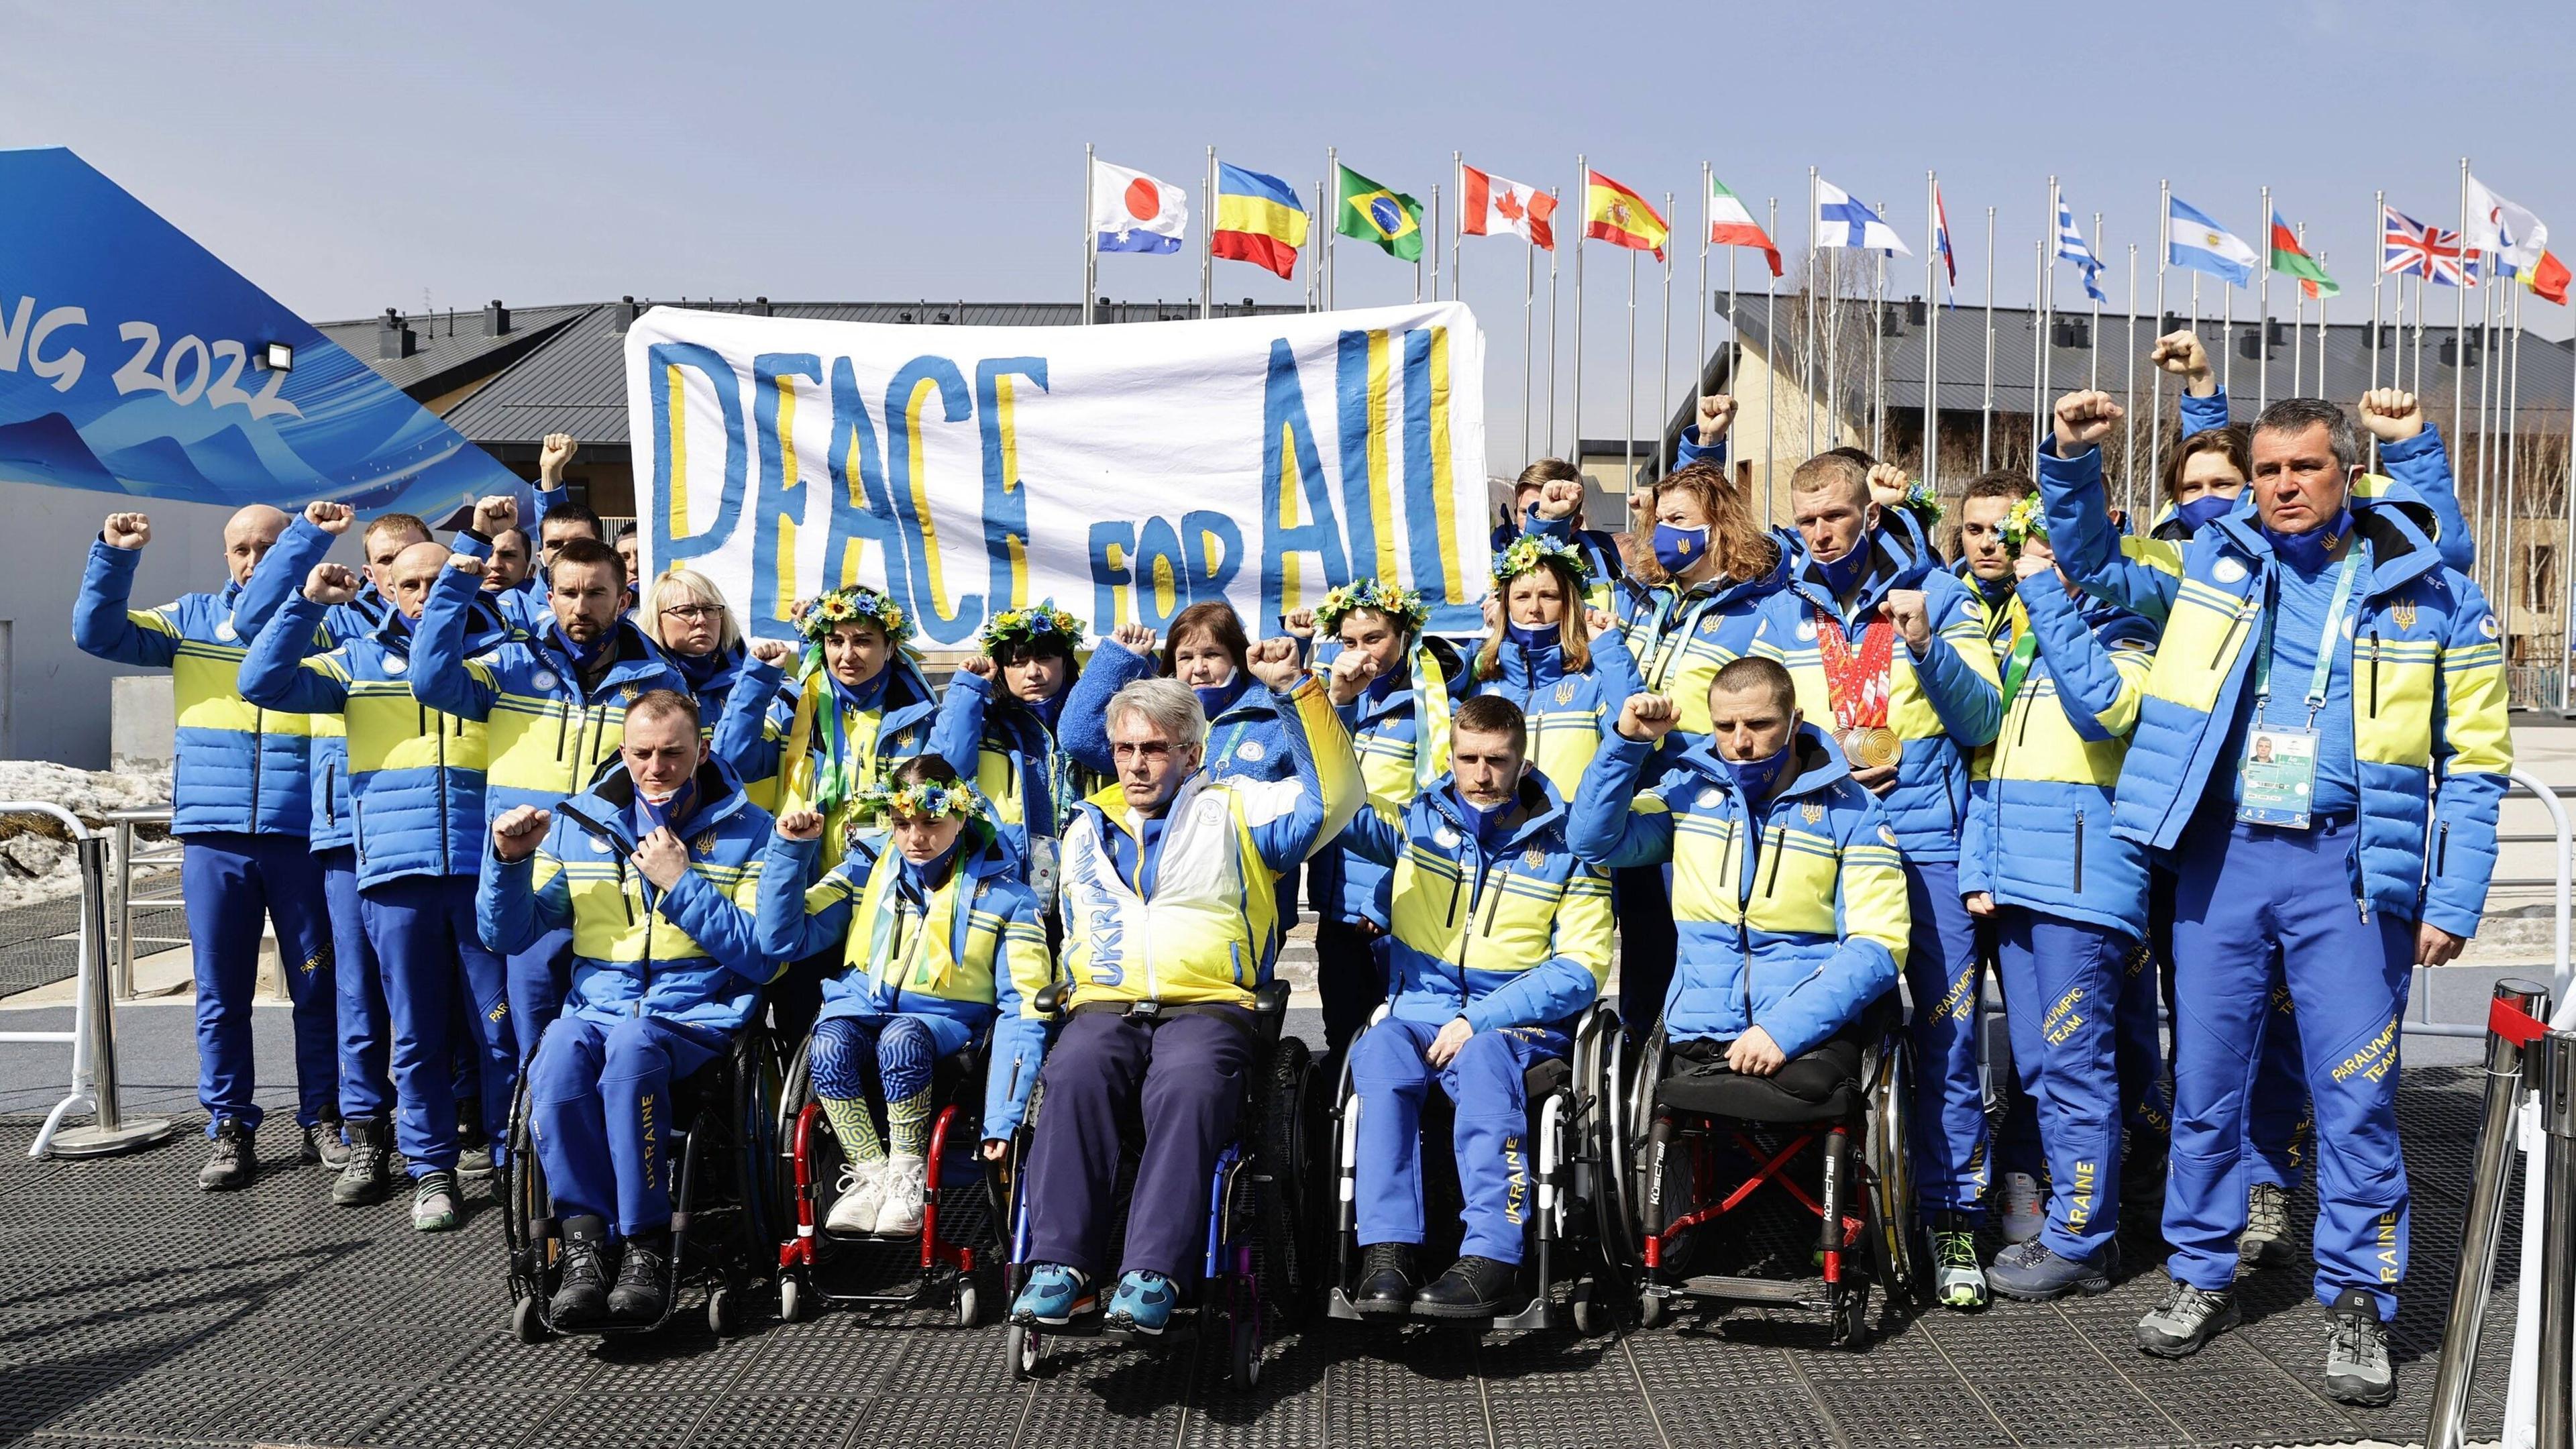 Bilder des Jahres: Das ukrainische Team setzt ein starkes Zeichen: Peace for all